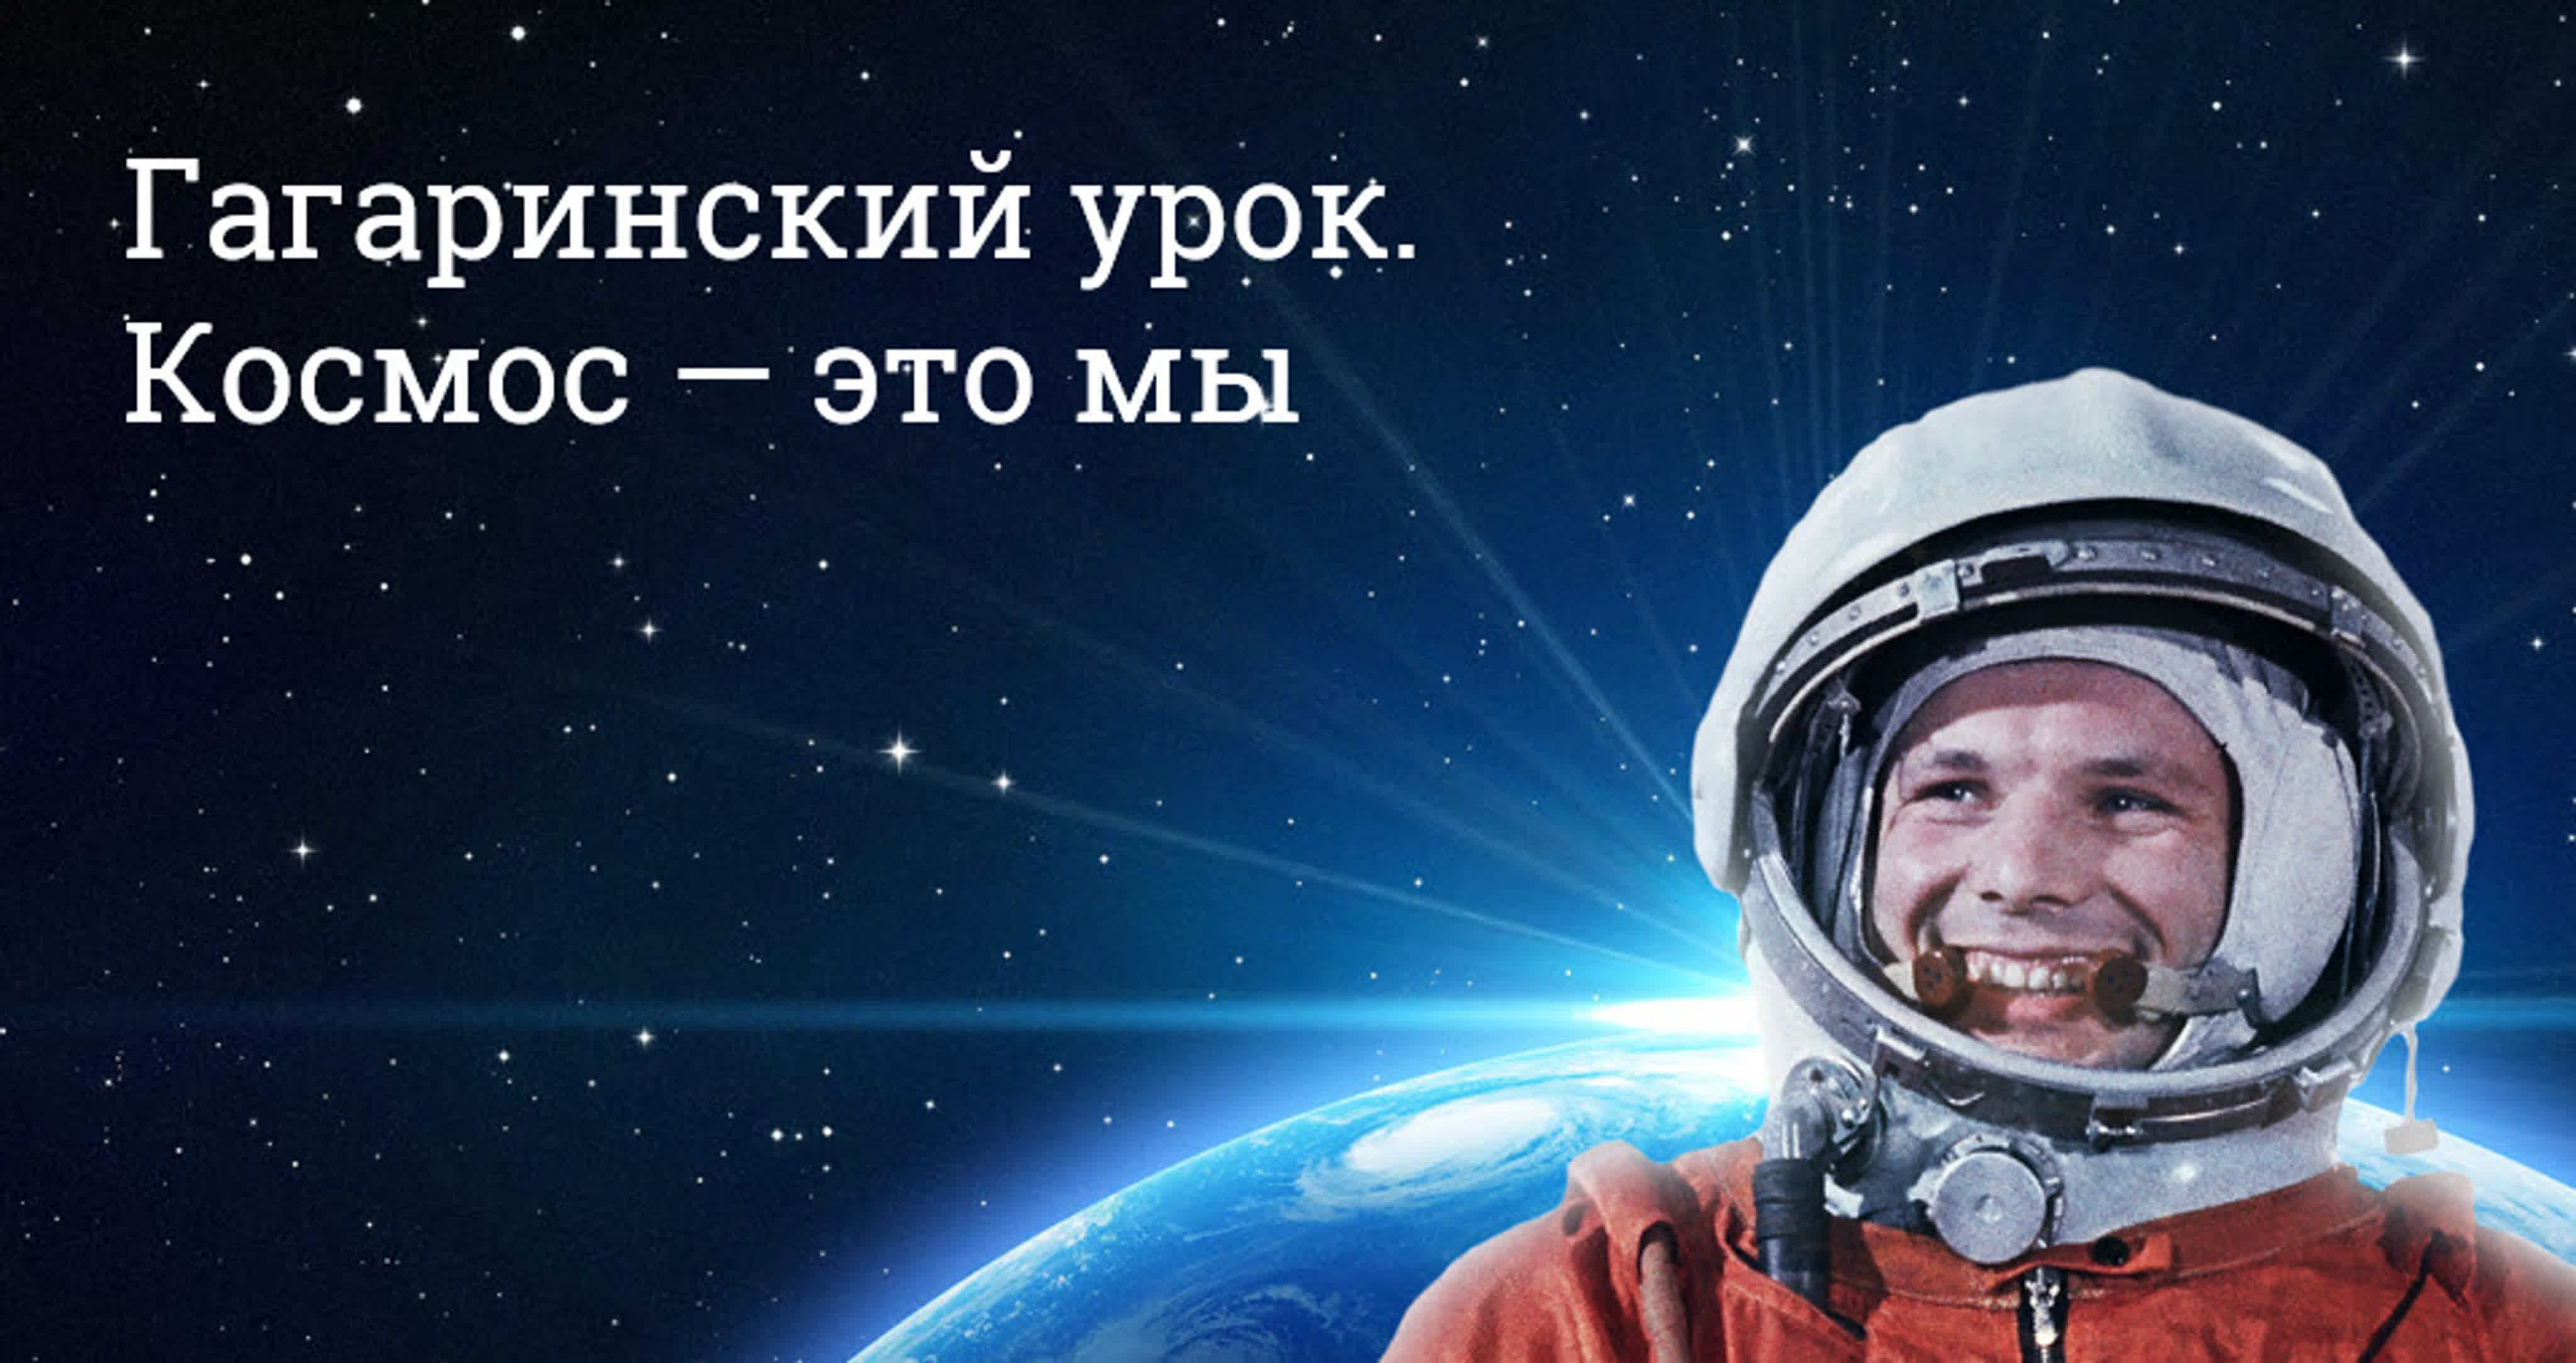 Включи день космонавтики. Гагаринский урок космос это мы. День космонавтики. День Космонавта. День космонавтики Гагарин.